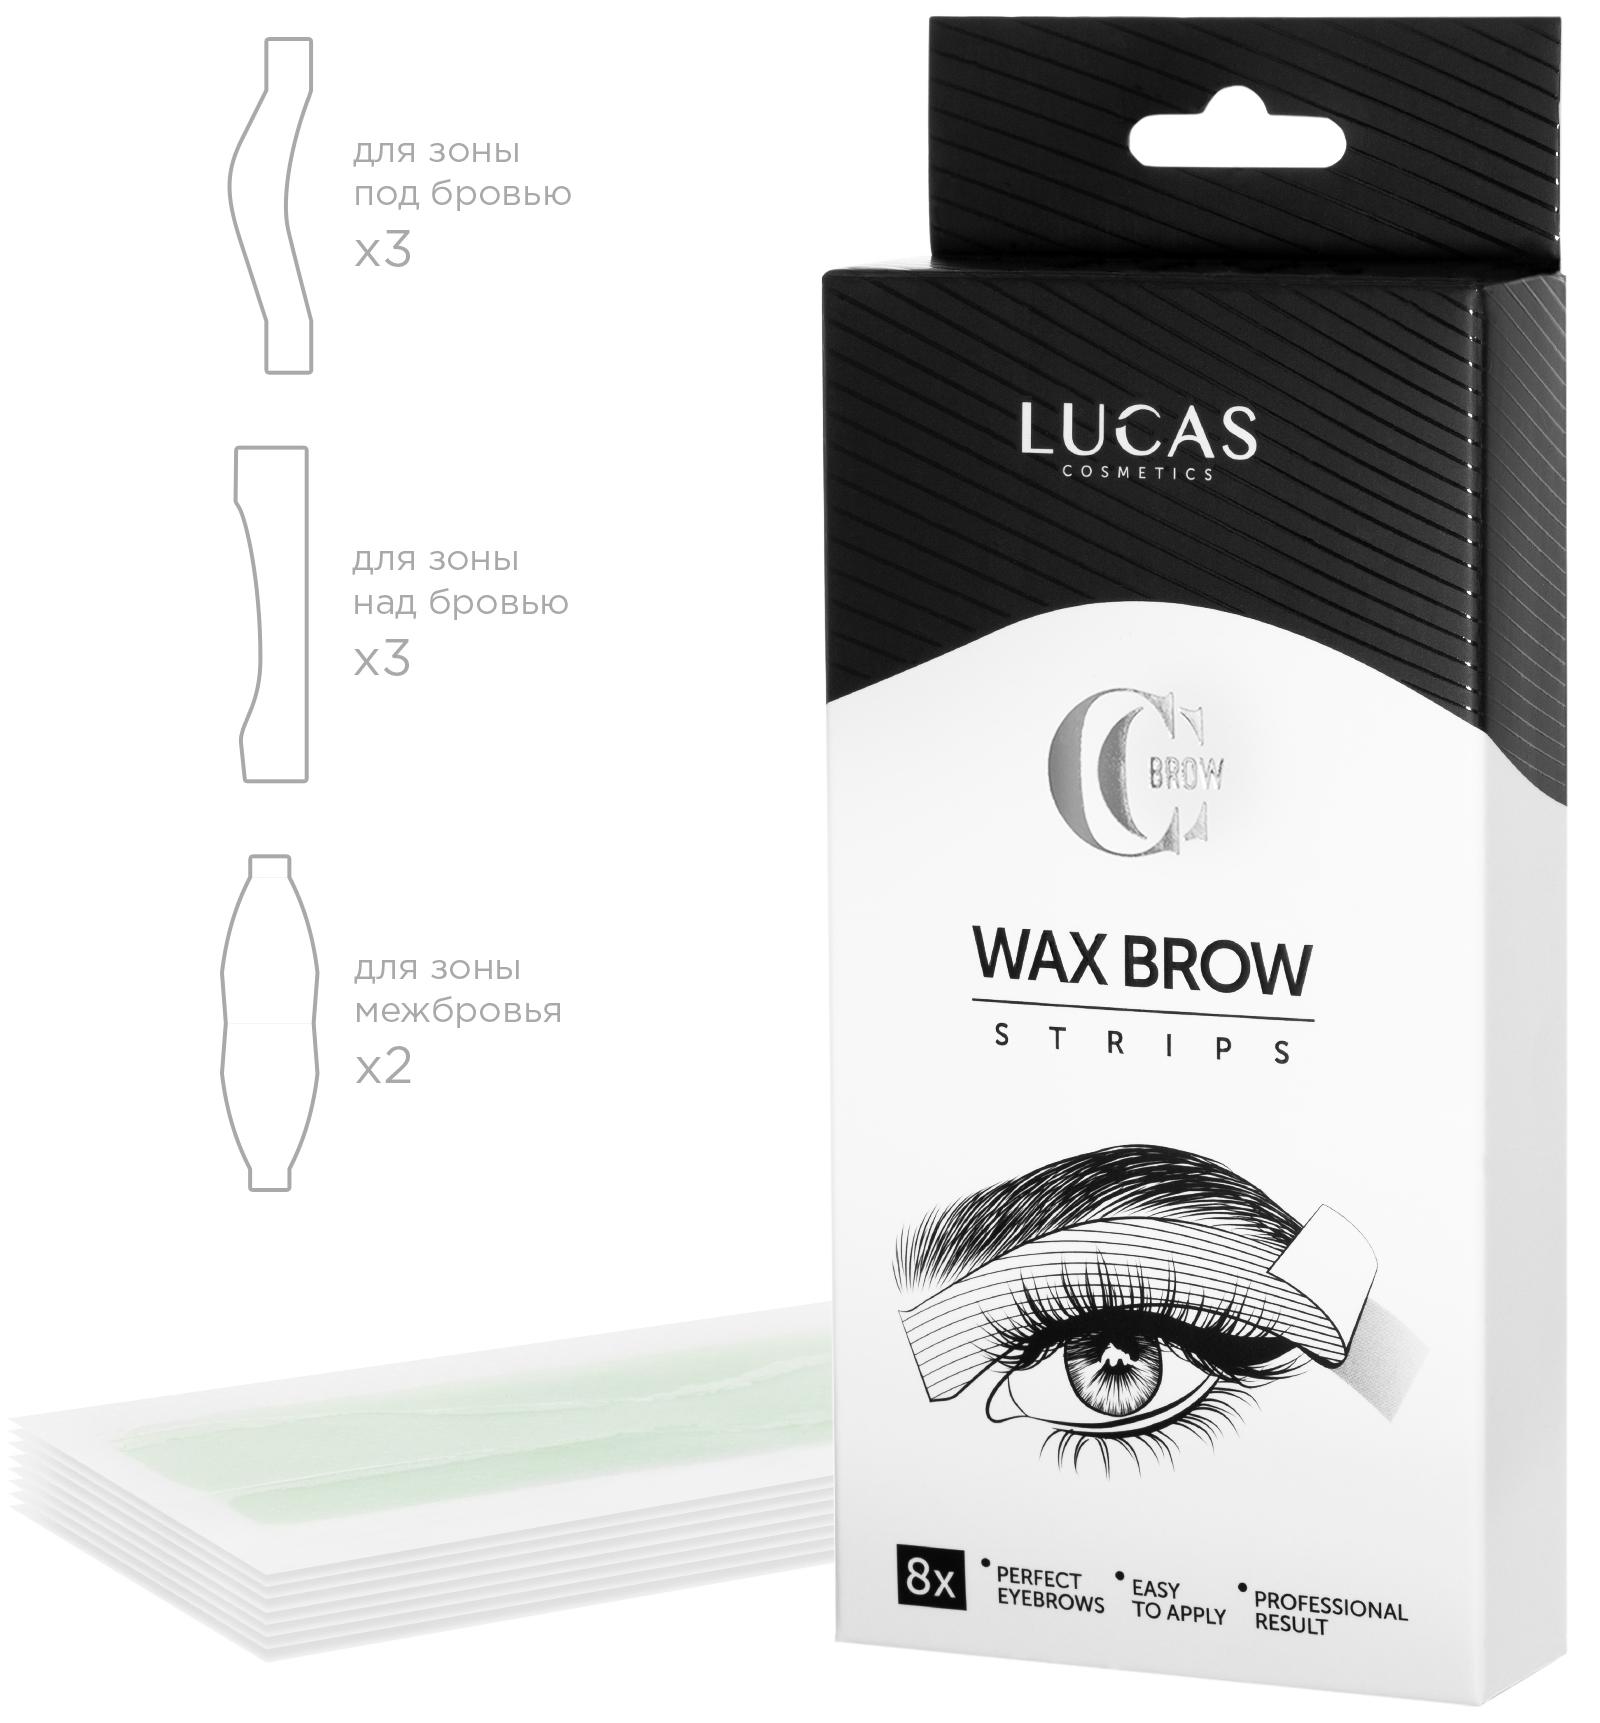 Восковые полосоки для коррекции бровей Wax Brow Strips CC Brow, 8шт Lucas' Cosmetics